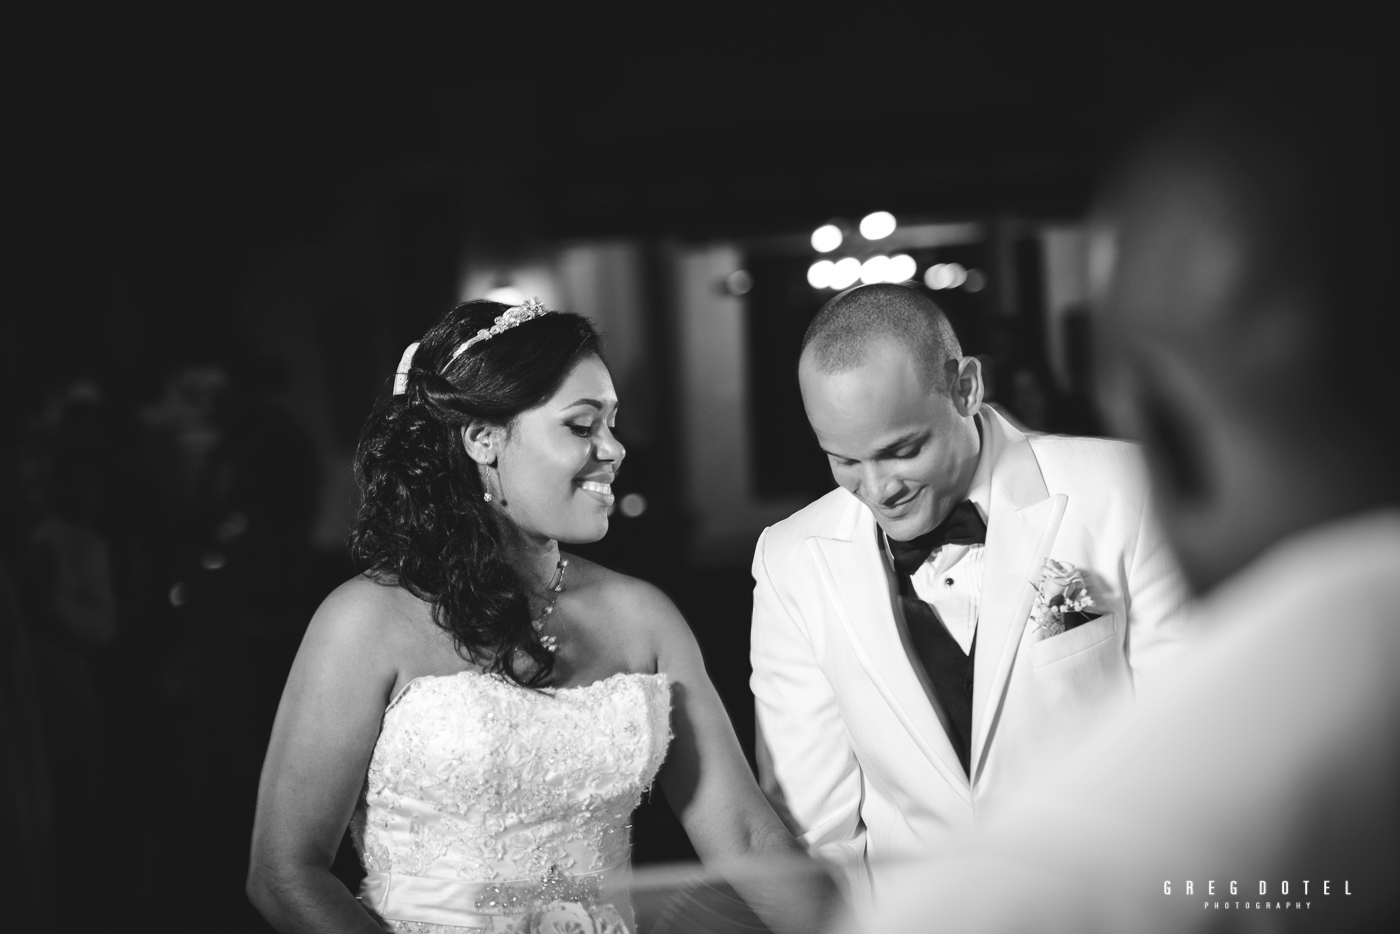 Fotografo profesional de bodas y sesion de novios en Republica Dominicana